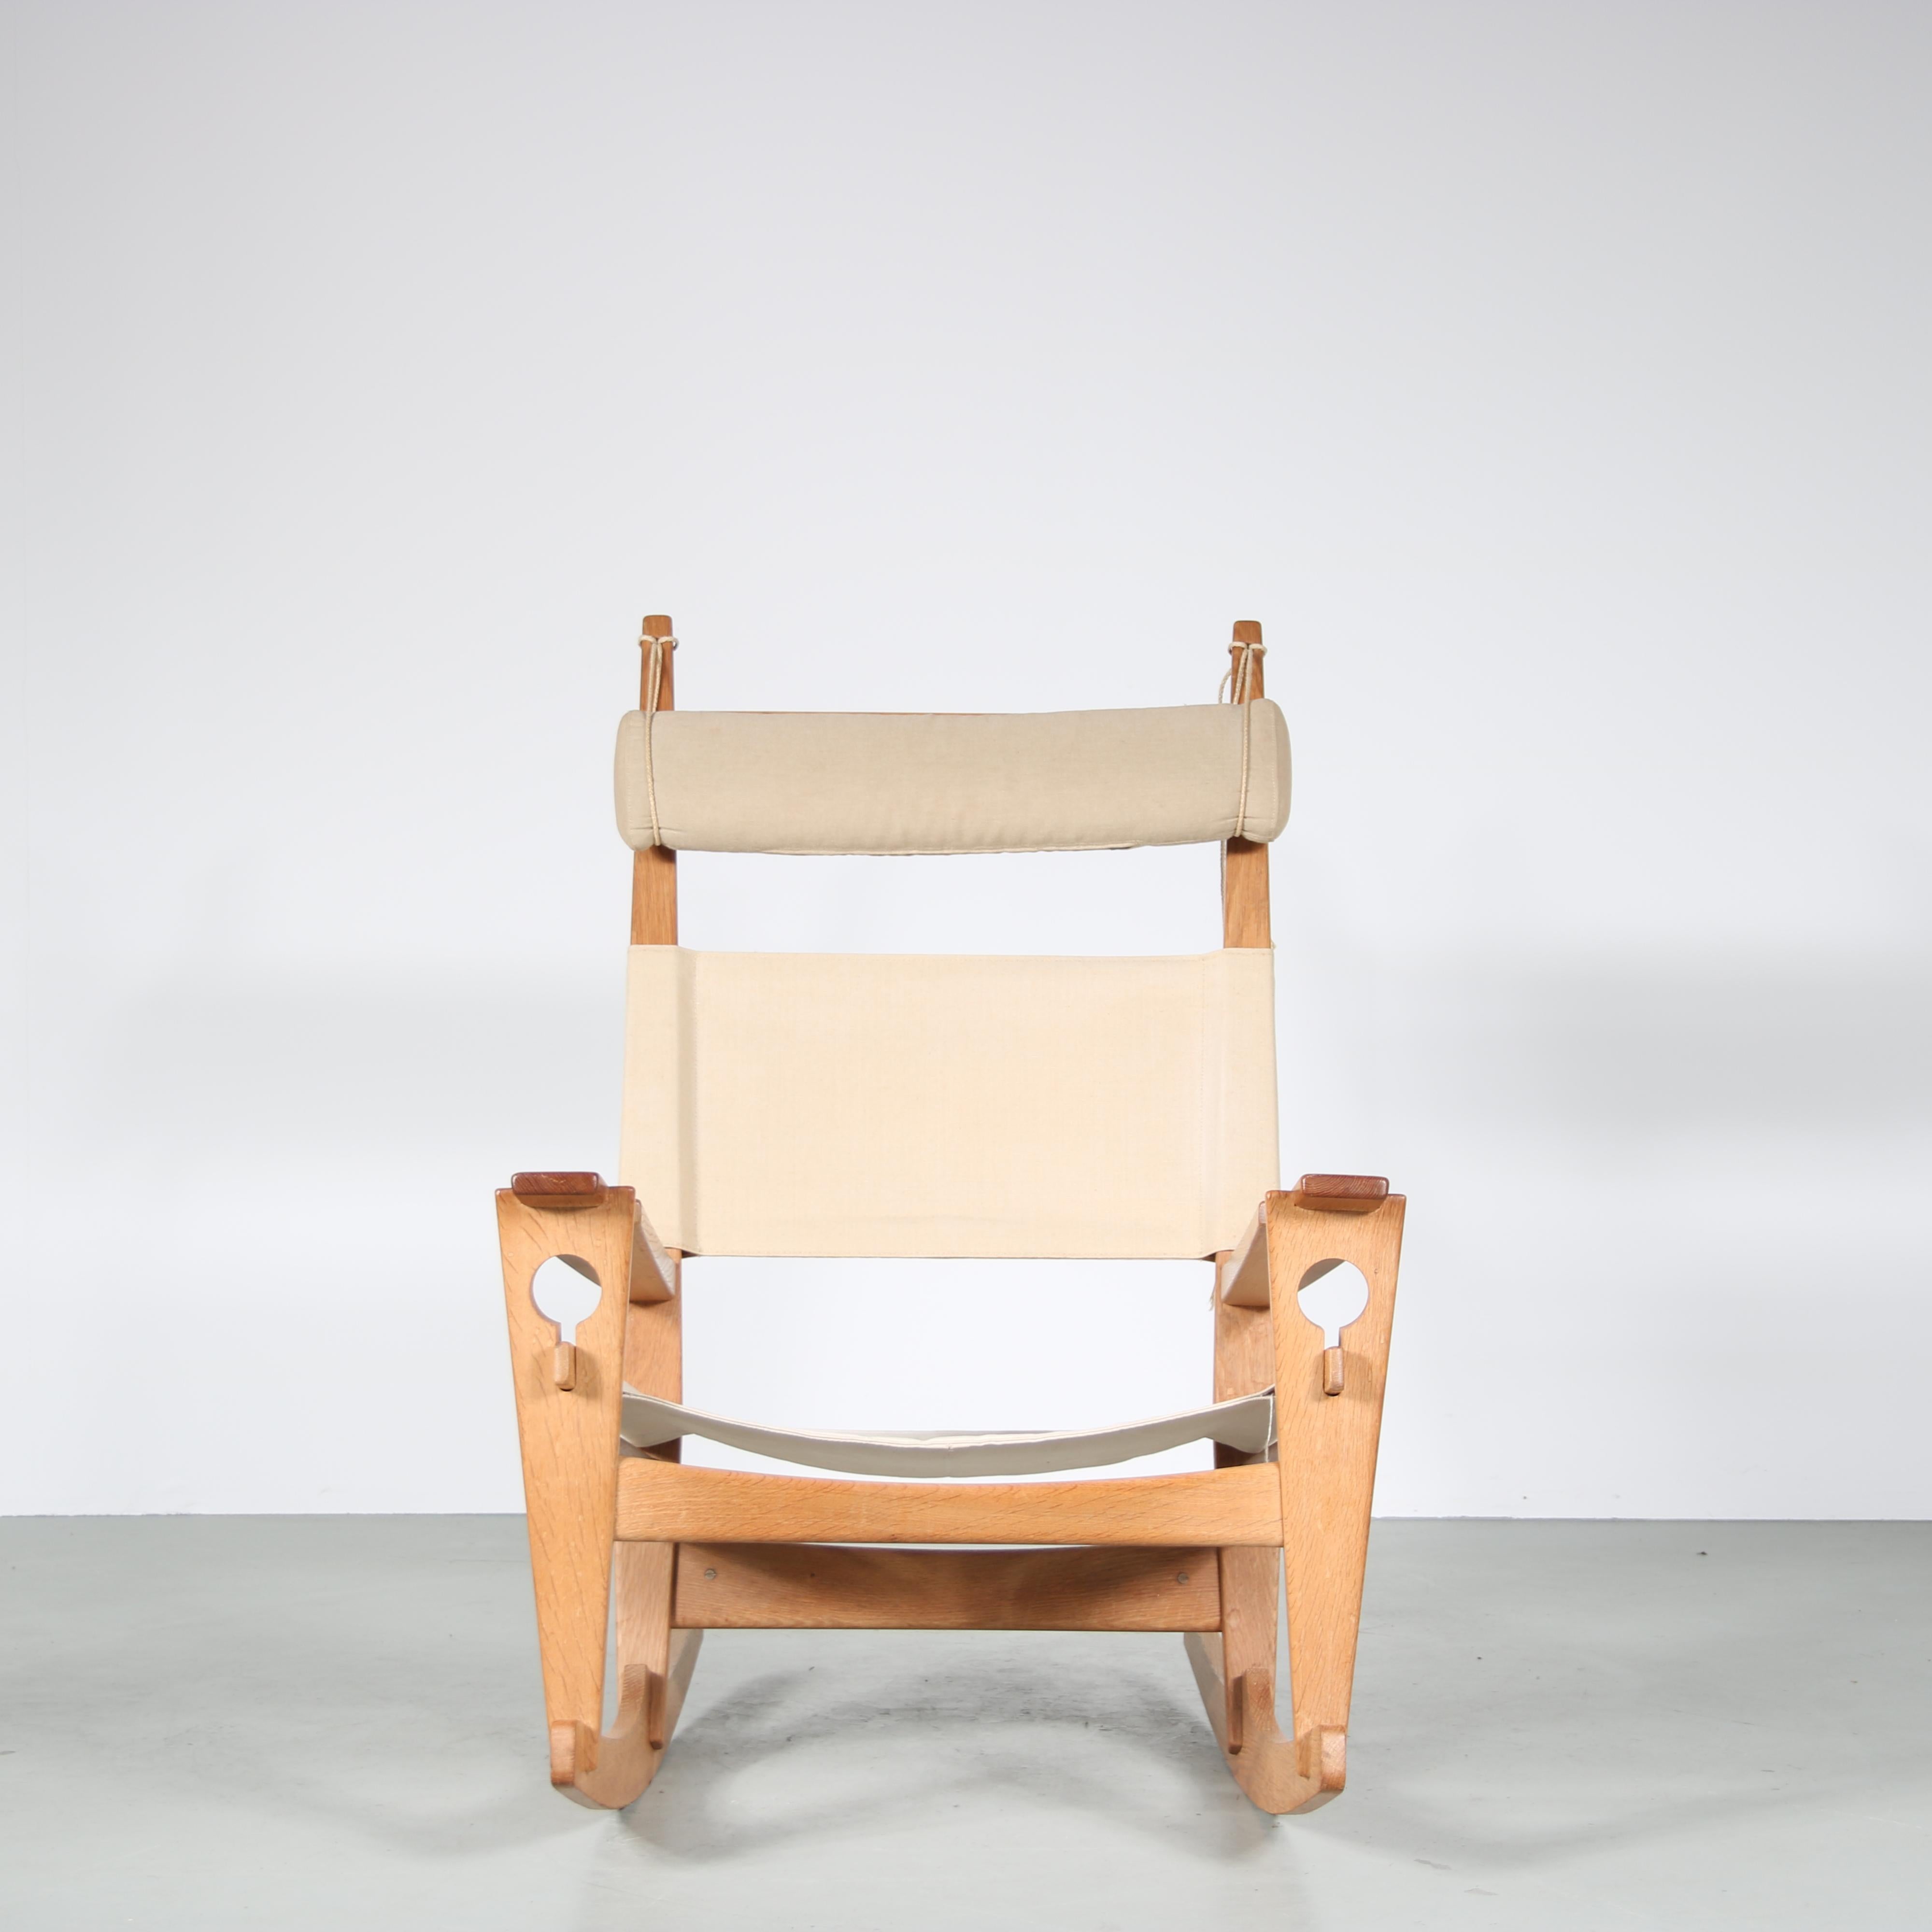 Fabric “Keyhole” Rocking Chair by Hans J. Wegner for GETAMA, Denmark, 1960